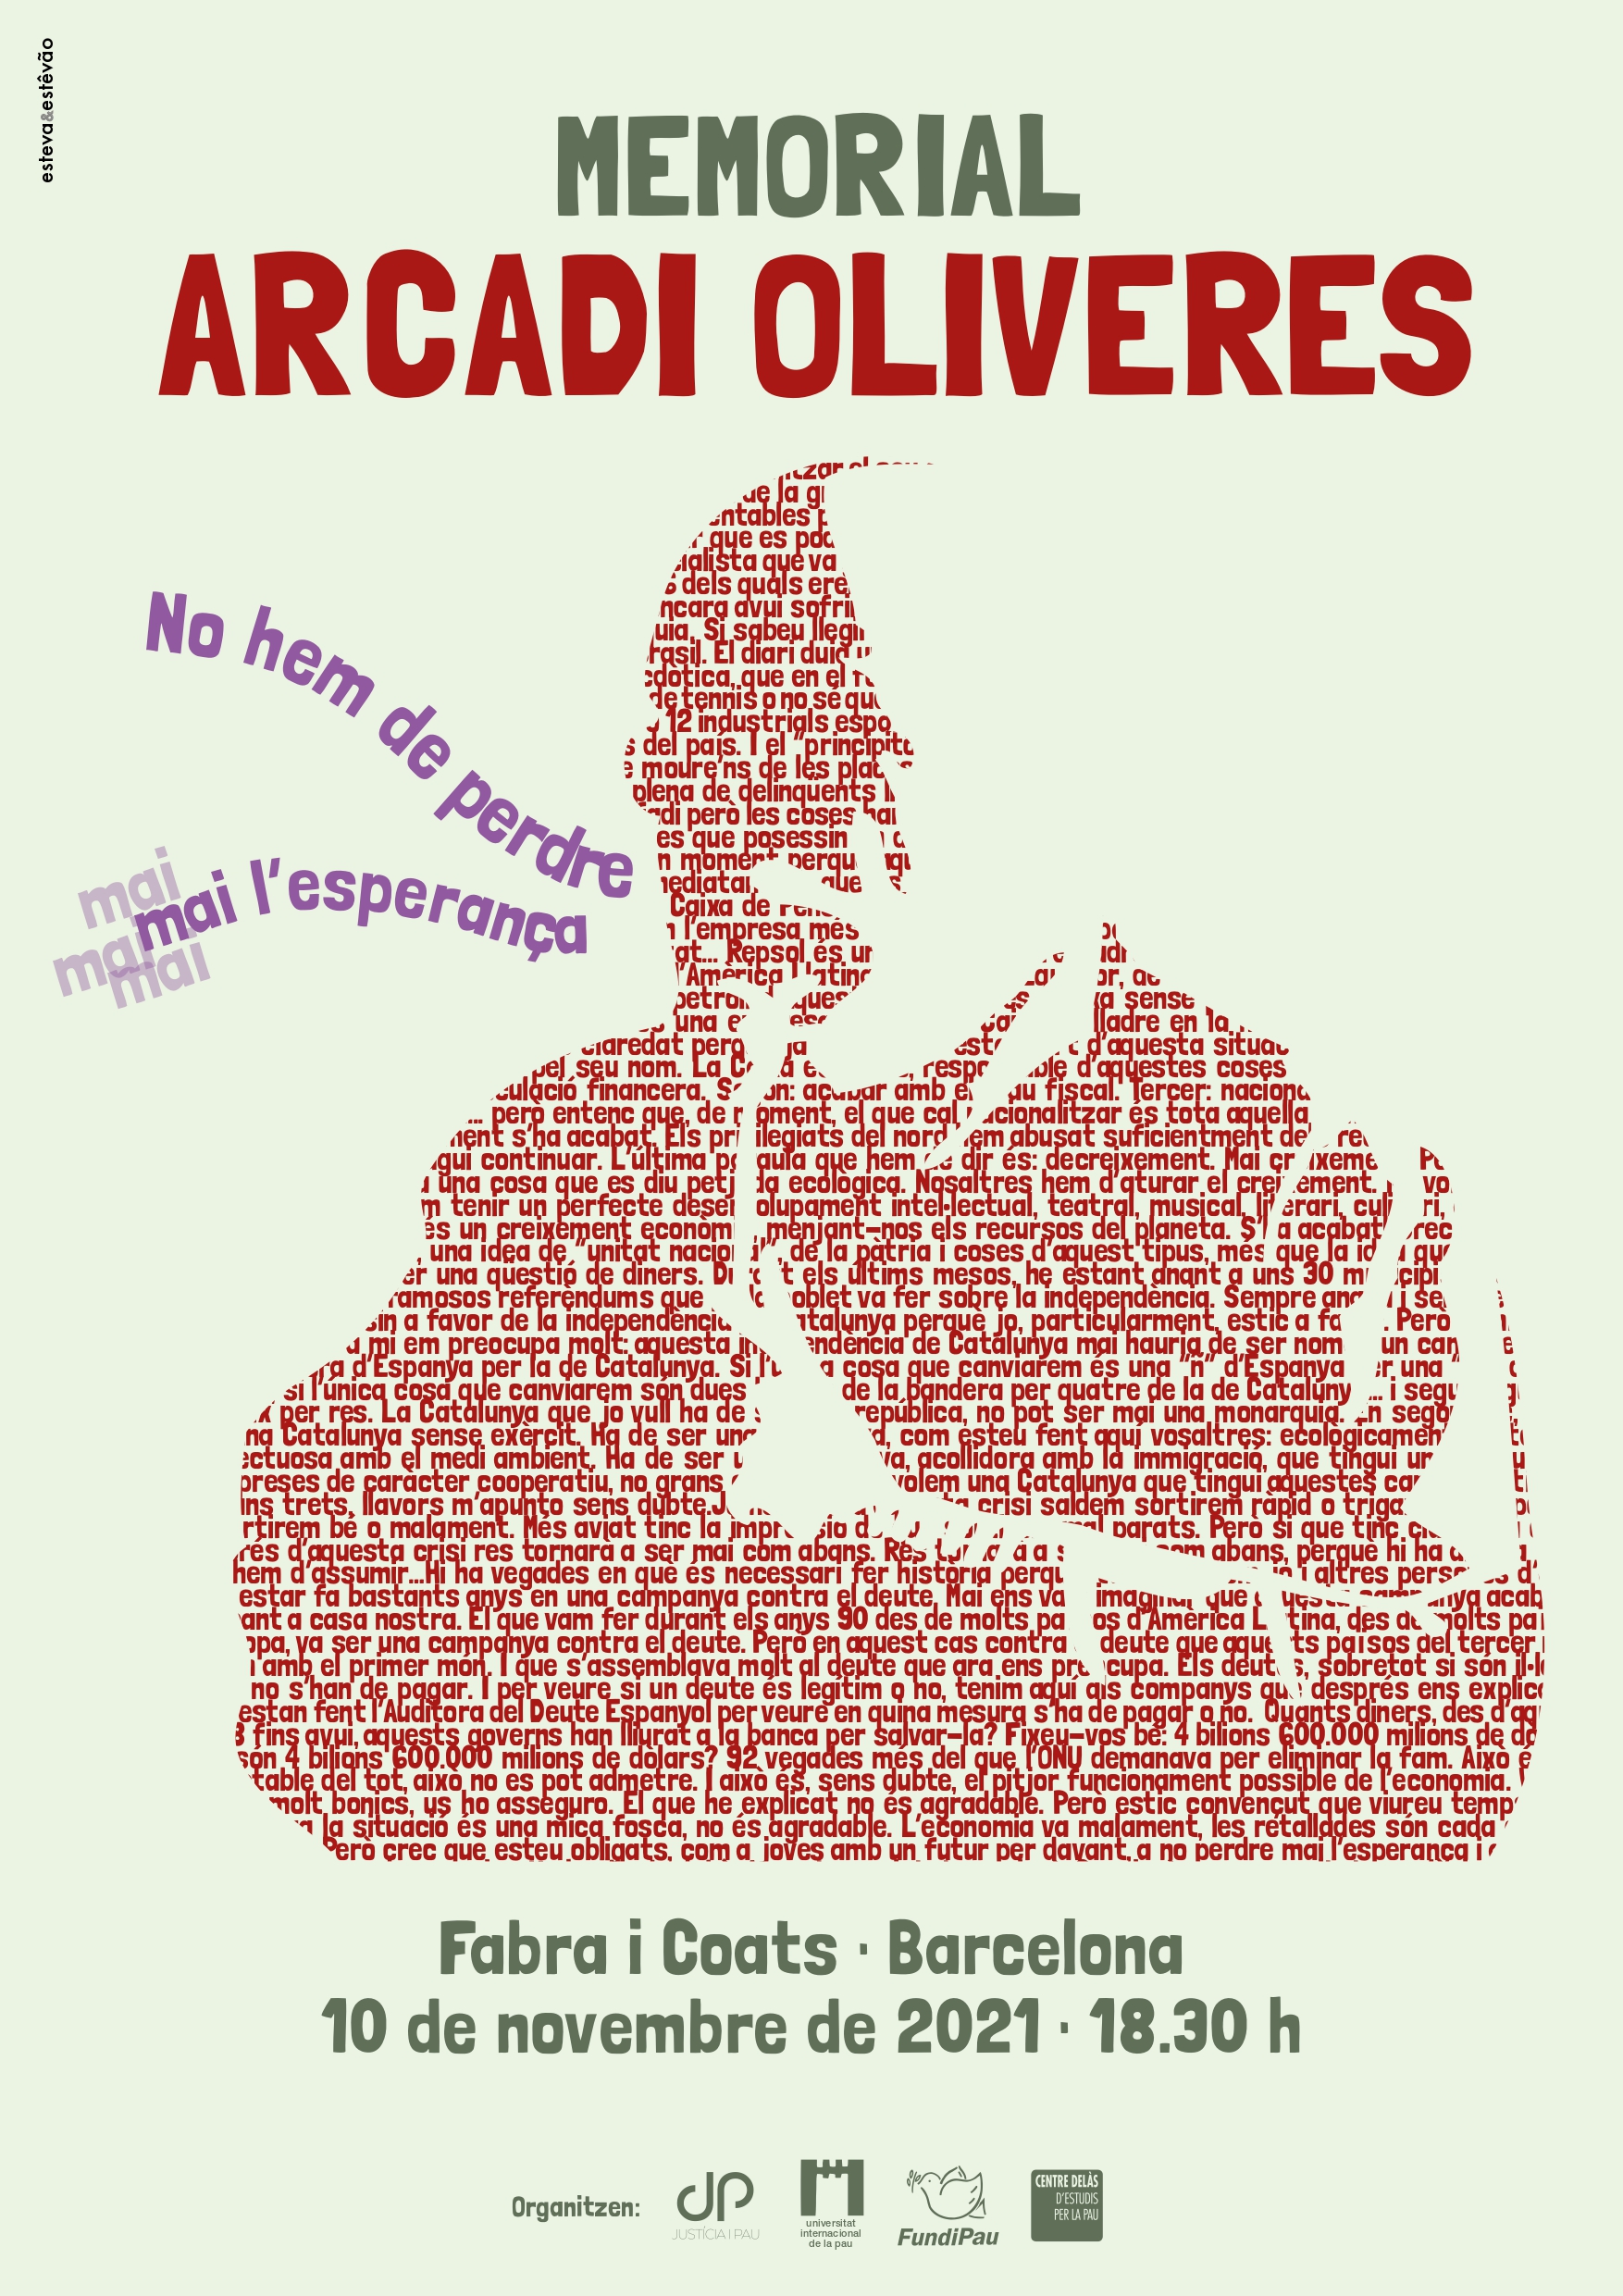 Les entitats de pau catalanes homenatjarem Arcadi Oliveres en un Memorial a Barcelona el pròxim 10 de novembre